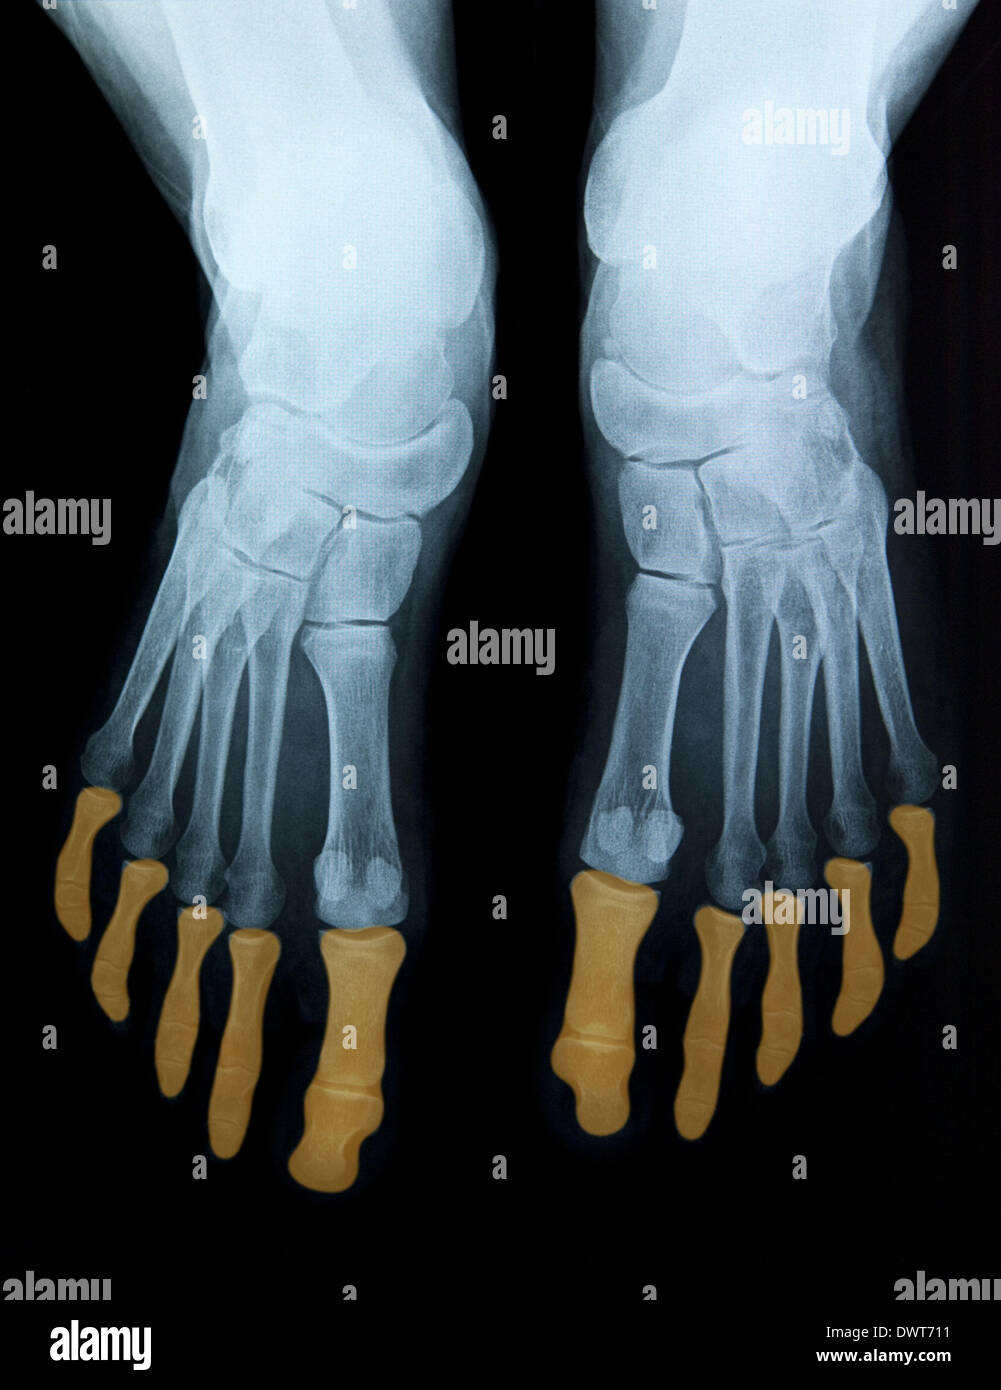 Foot x ray Stock Photo